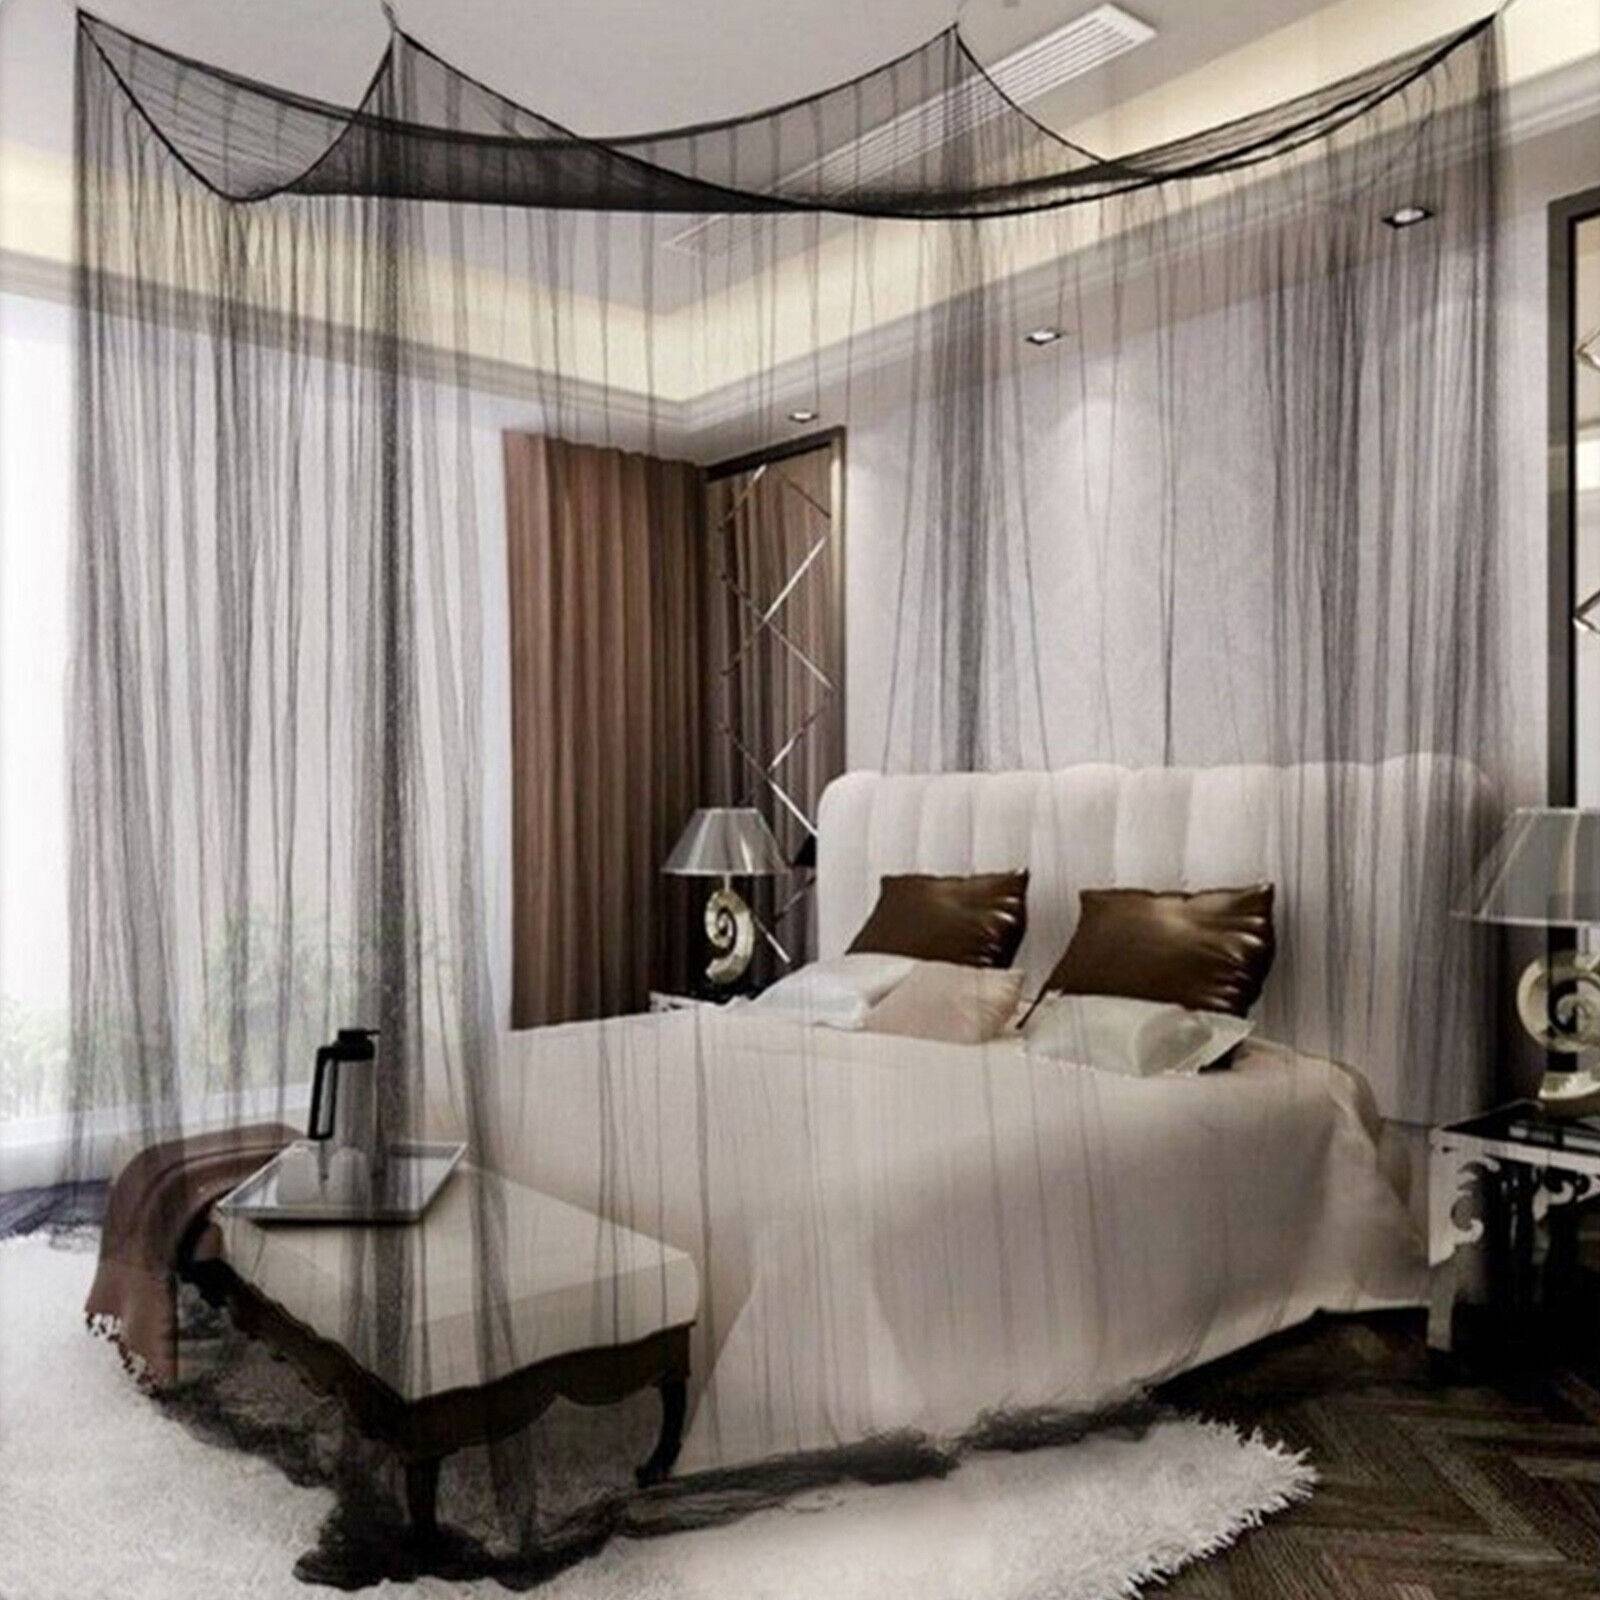 Оформление кровати спальни балдахином – фото идеи интерьеров